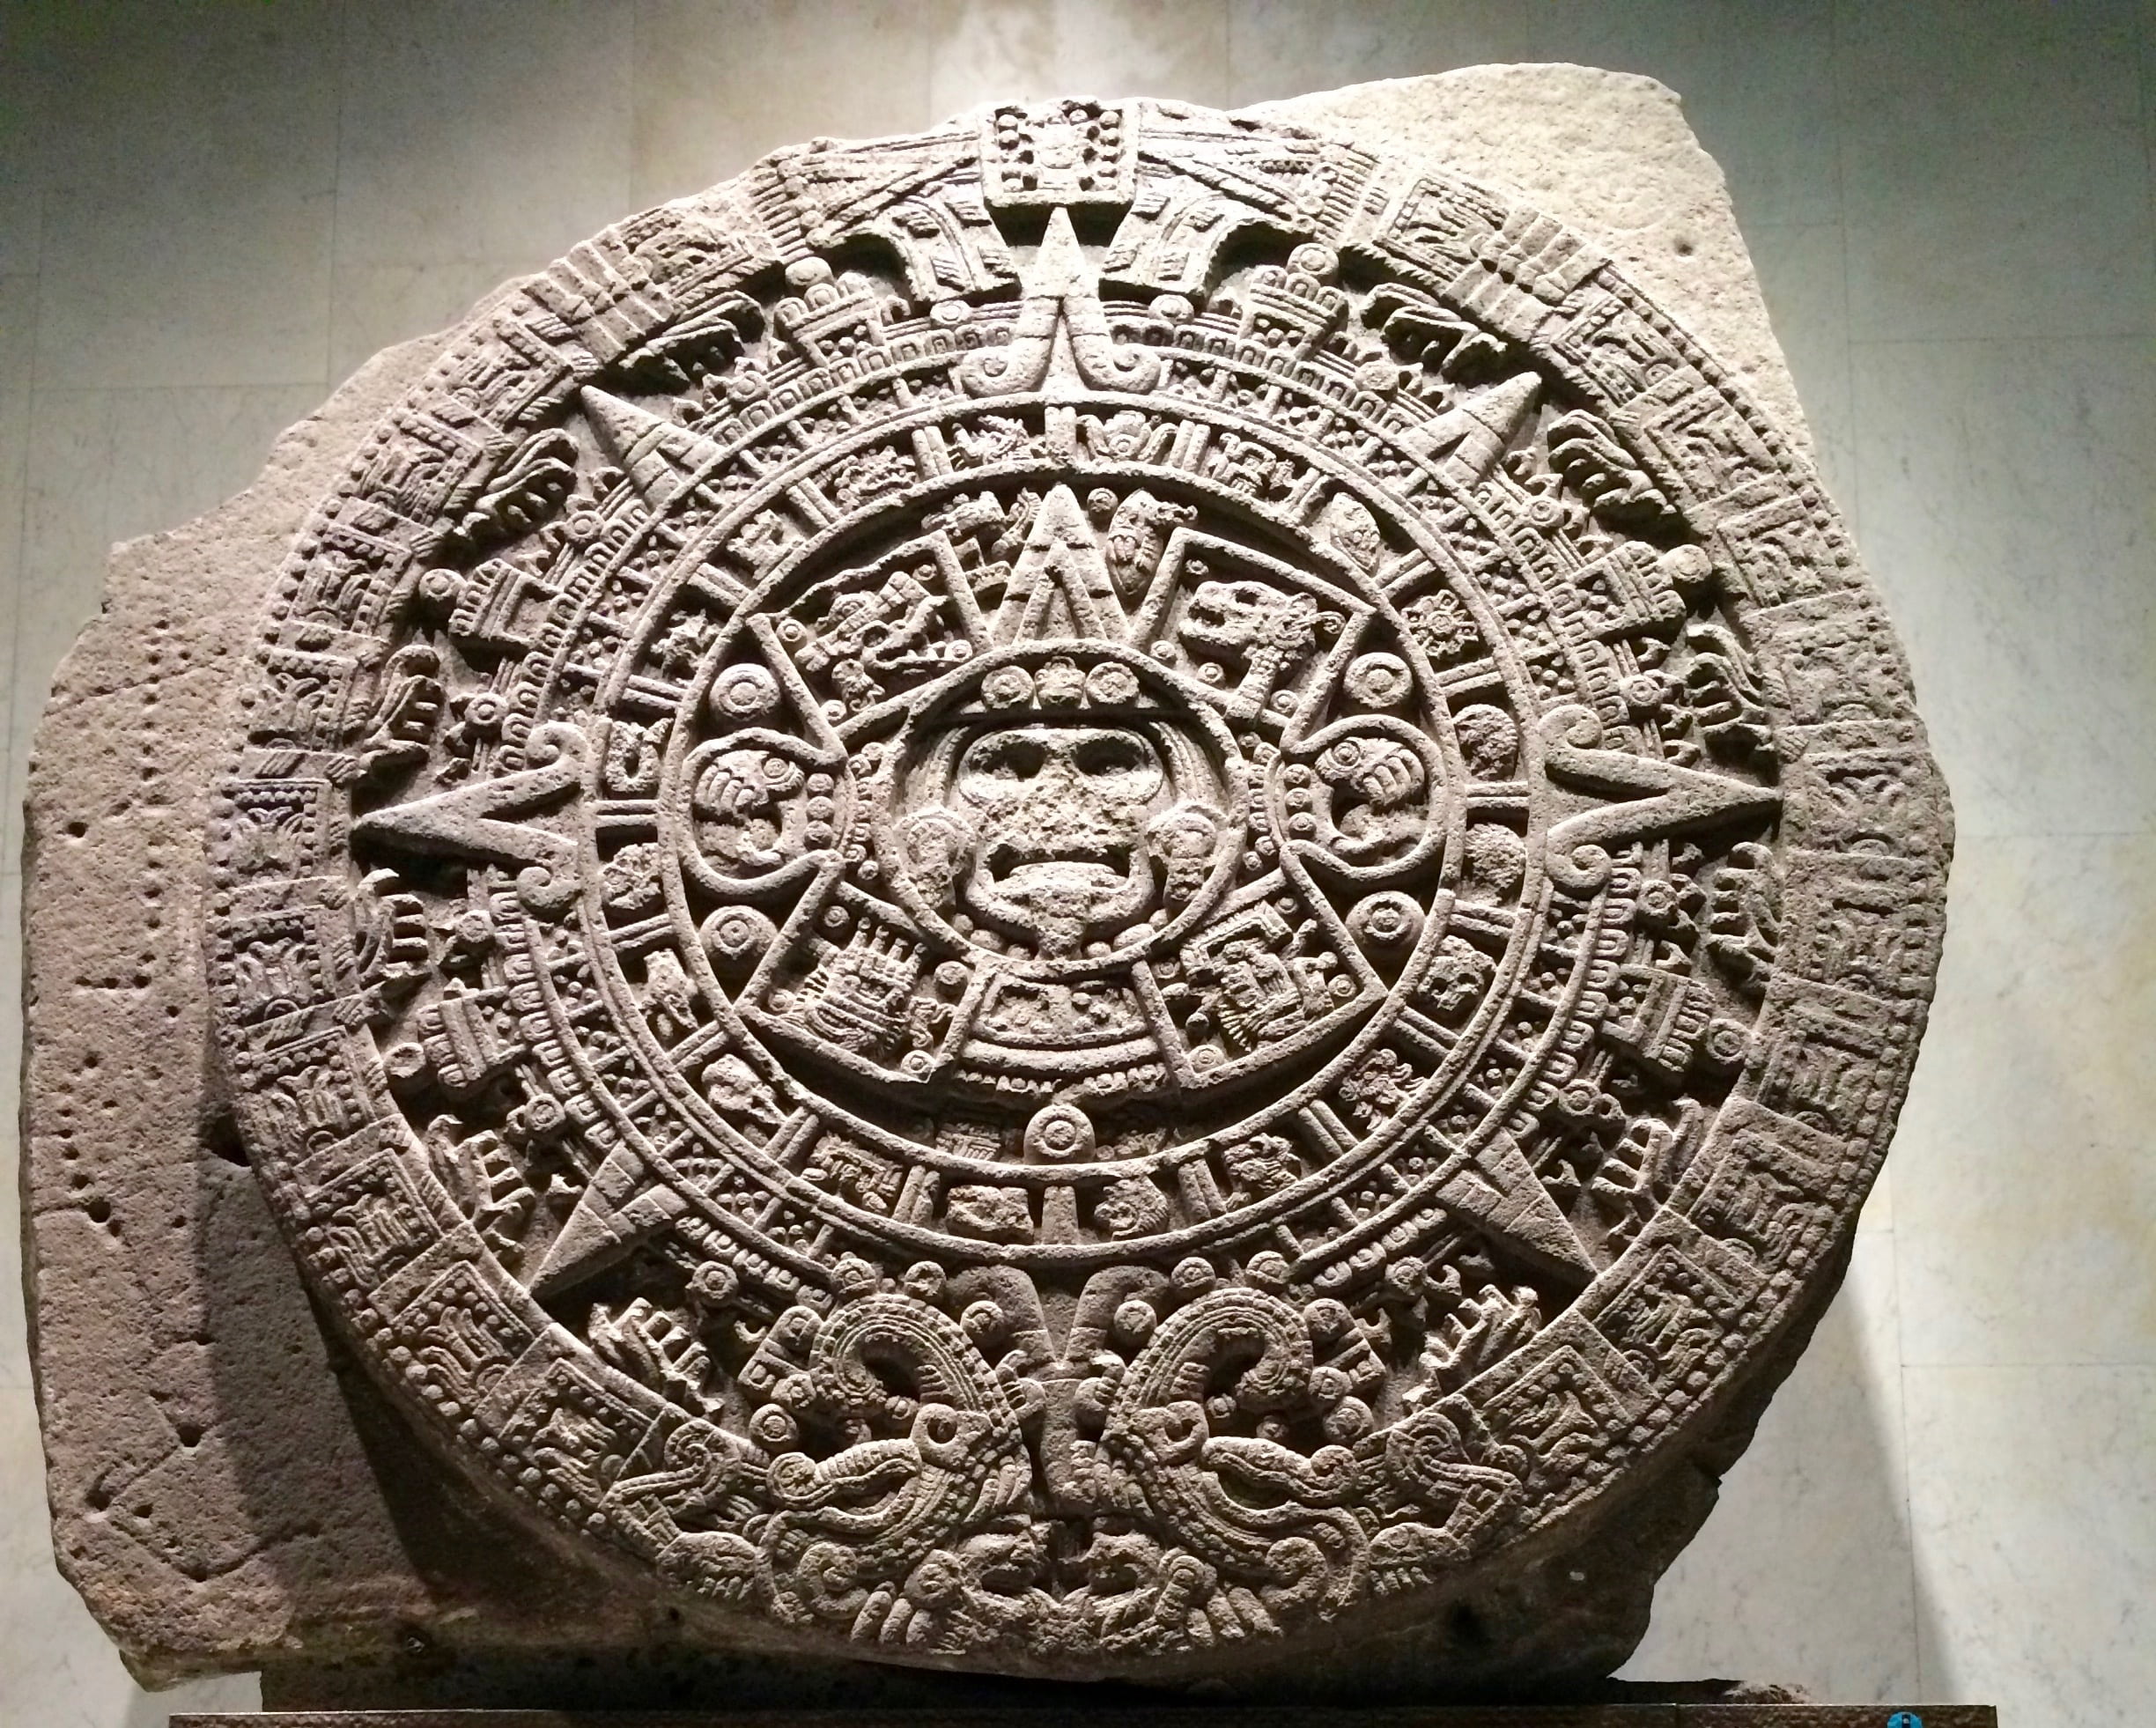 Una corrección de la profecía de los mayas desvela que el fin del mundo será este año 